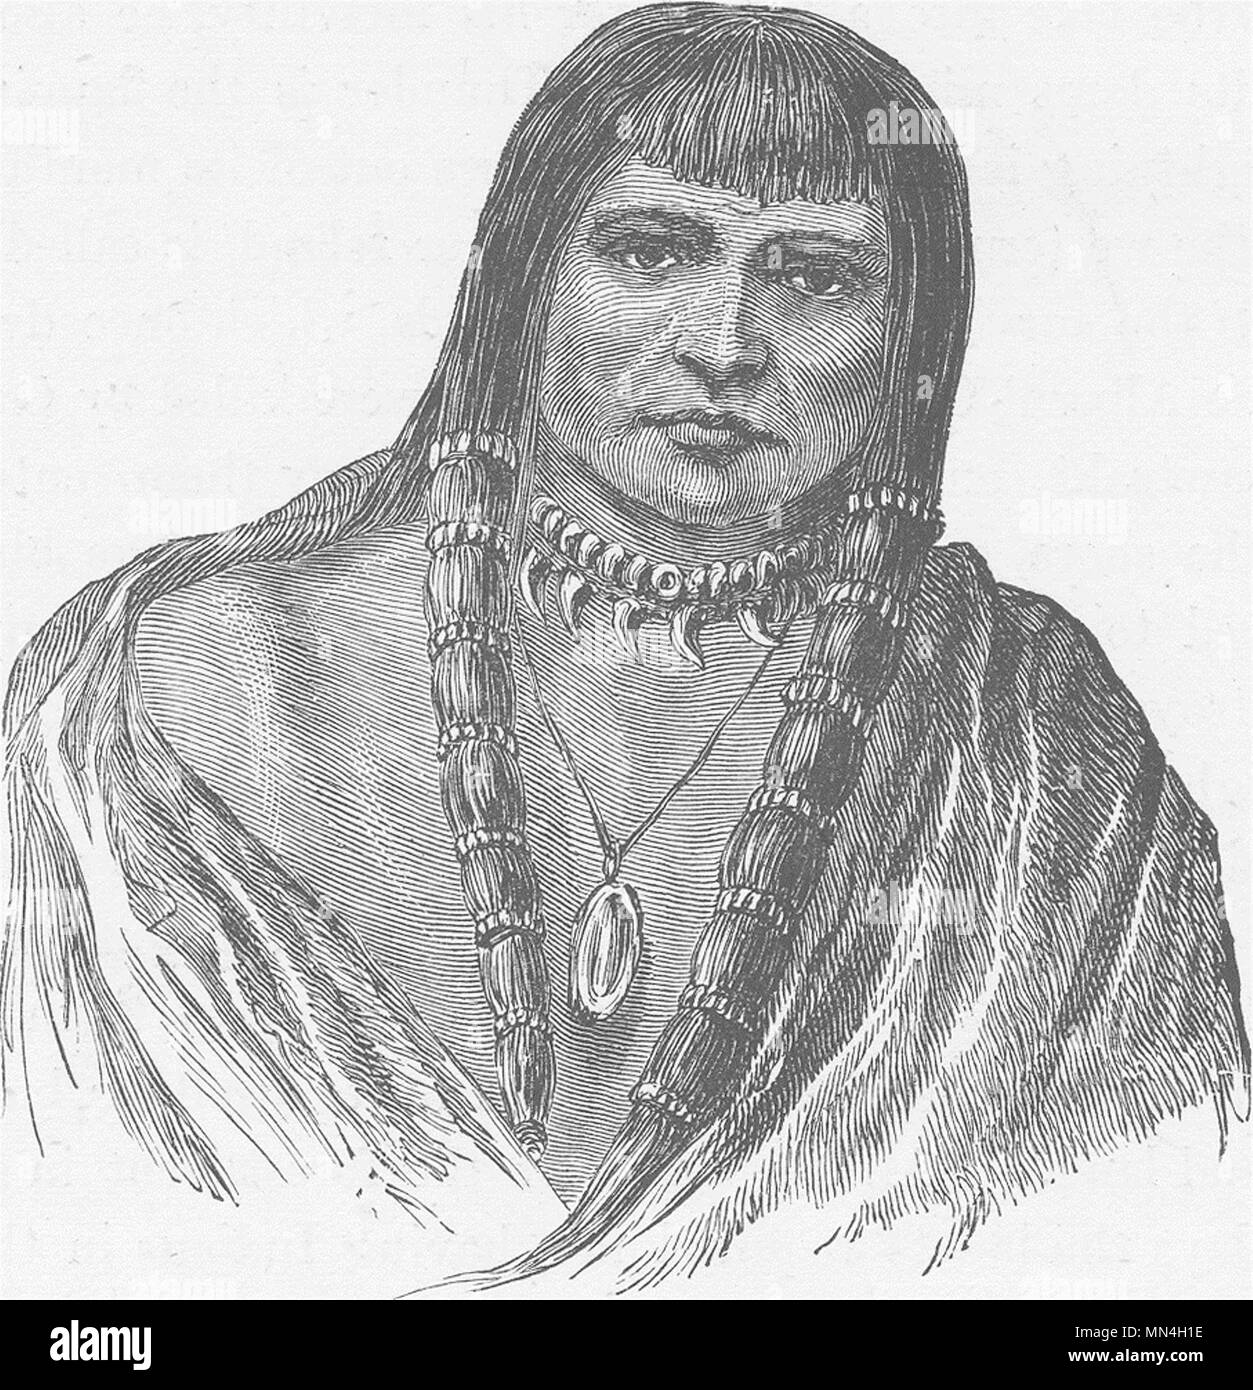 Sioux Indian Fotos Und Bildmaterial In Hoher Auflösung Alamy 